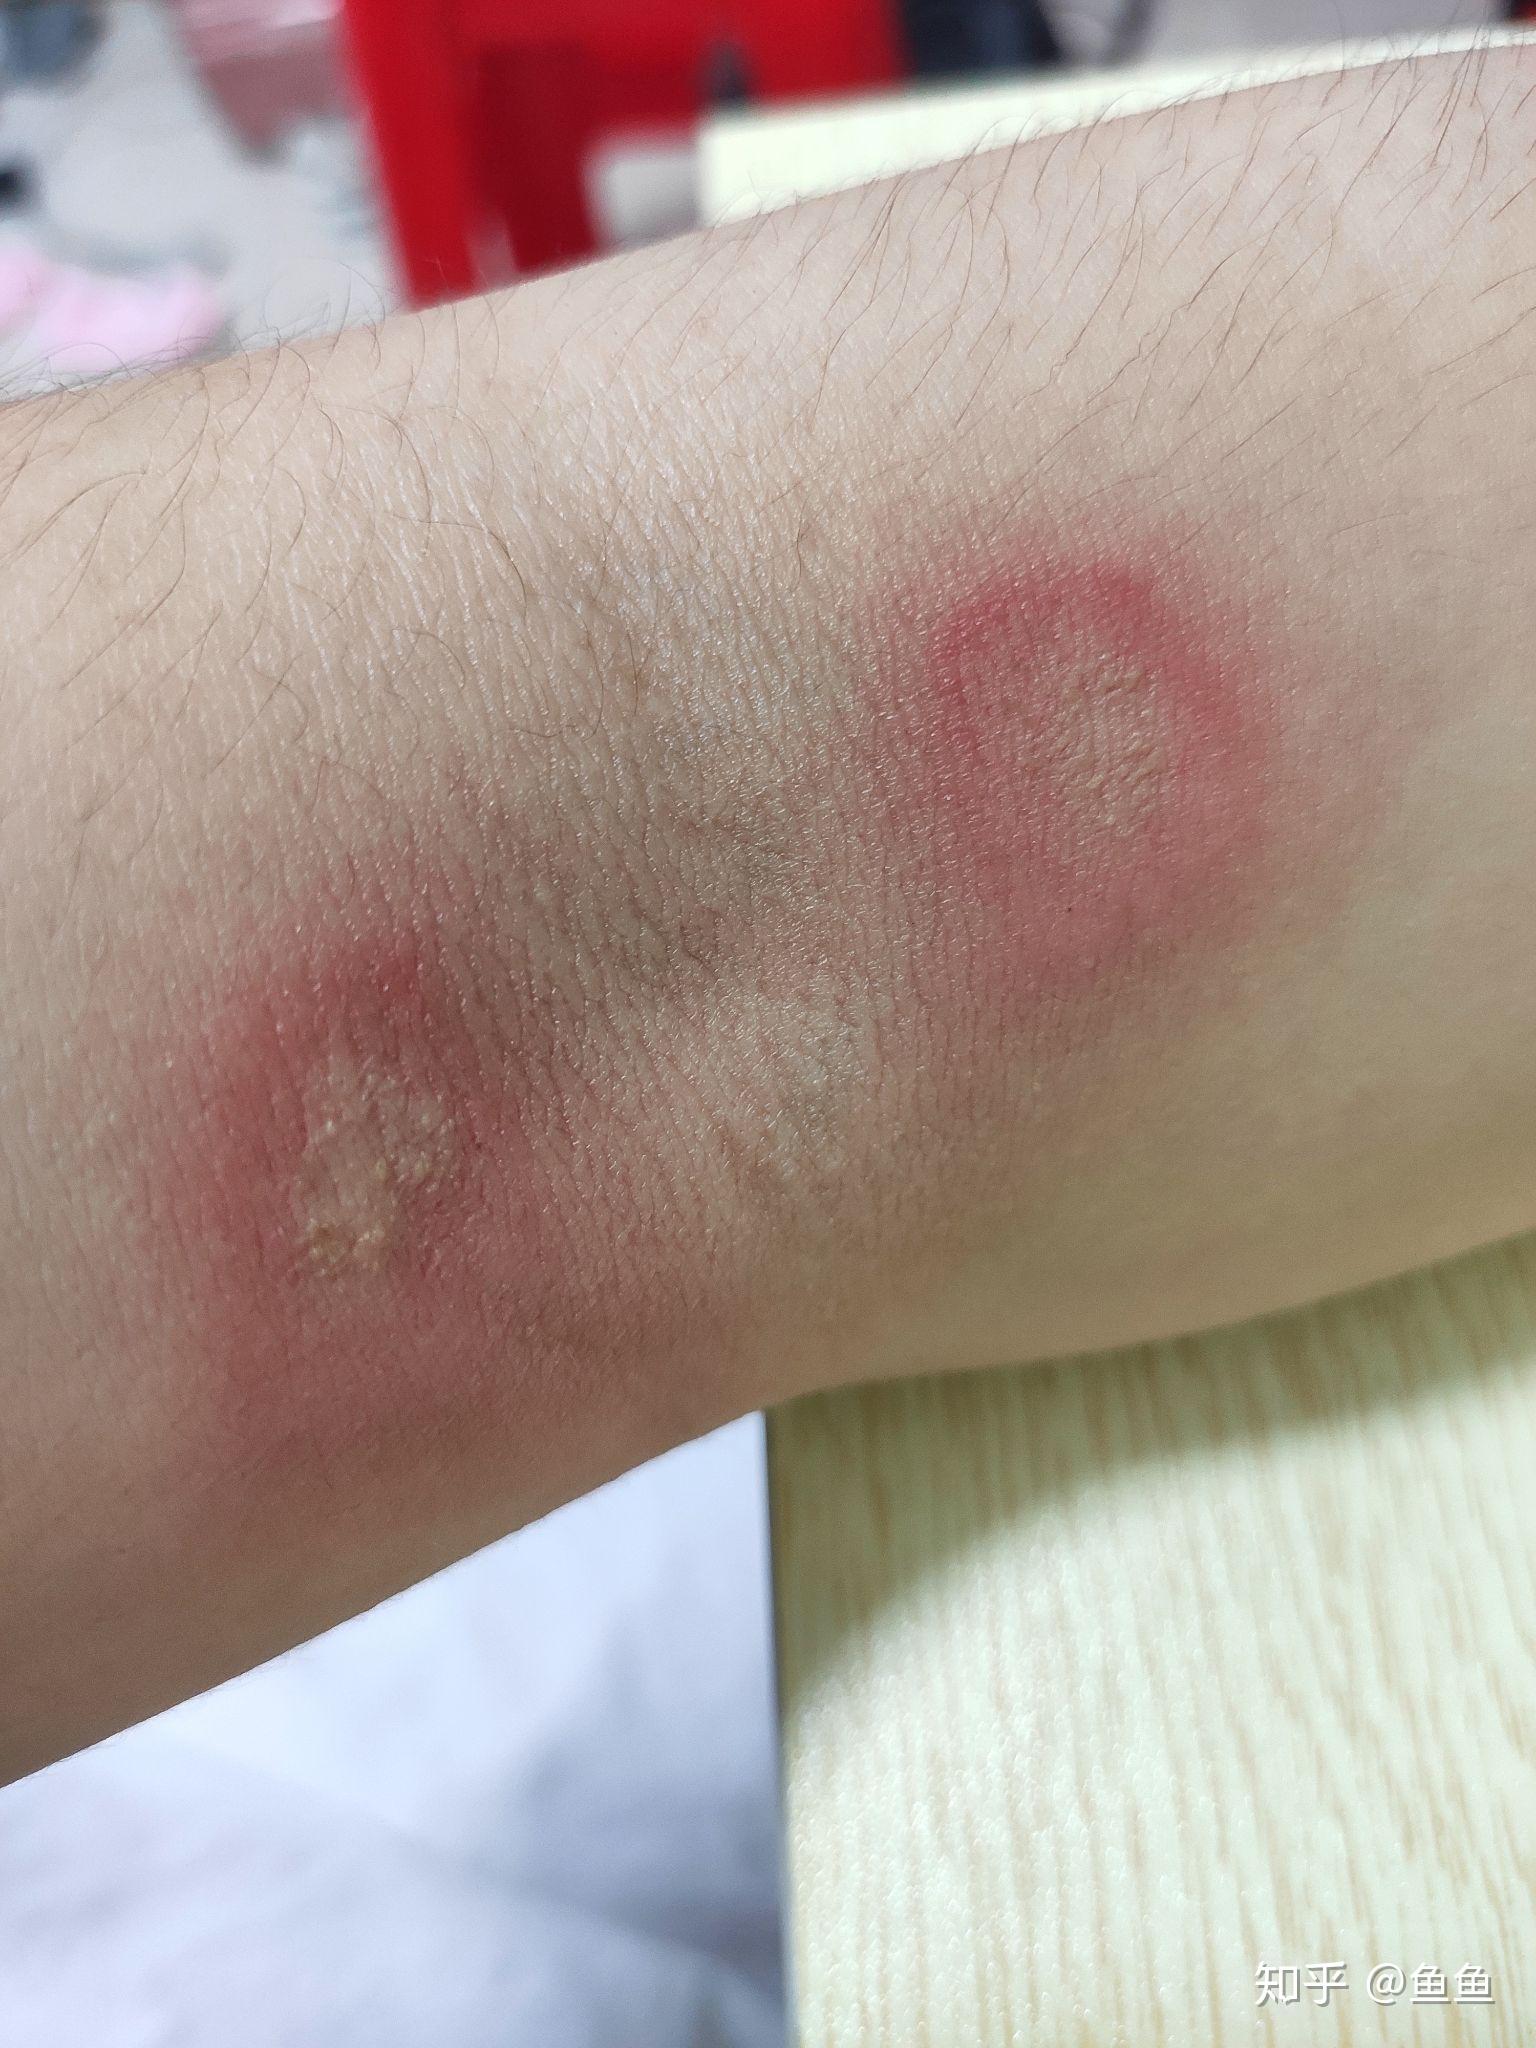 这是被虫子咬了吗就两天一开始以为是蚊子包然后有点刺痛但是不养